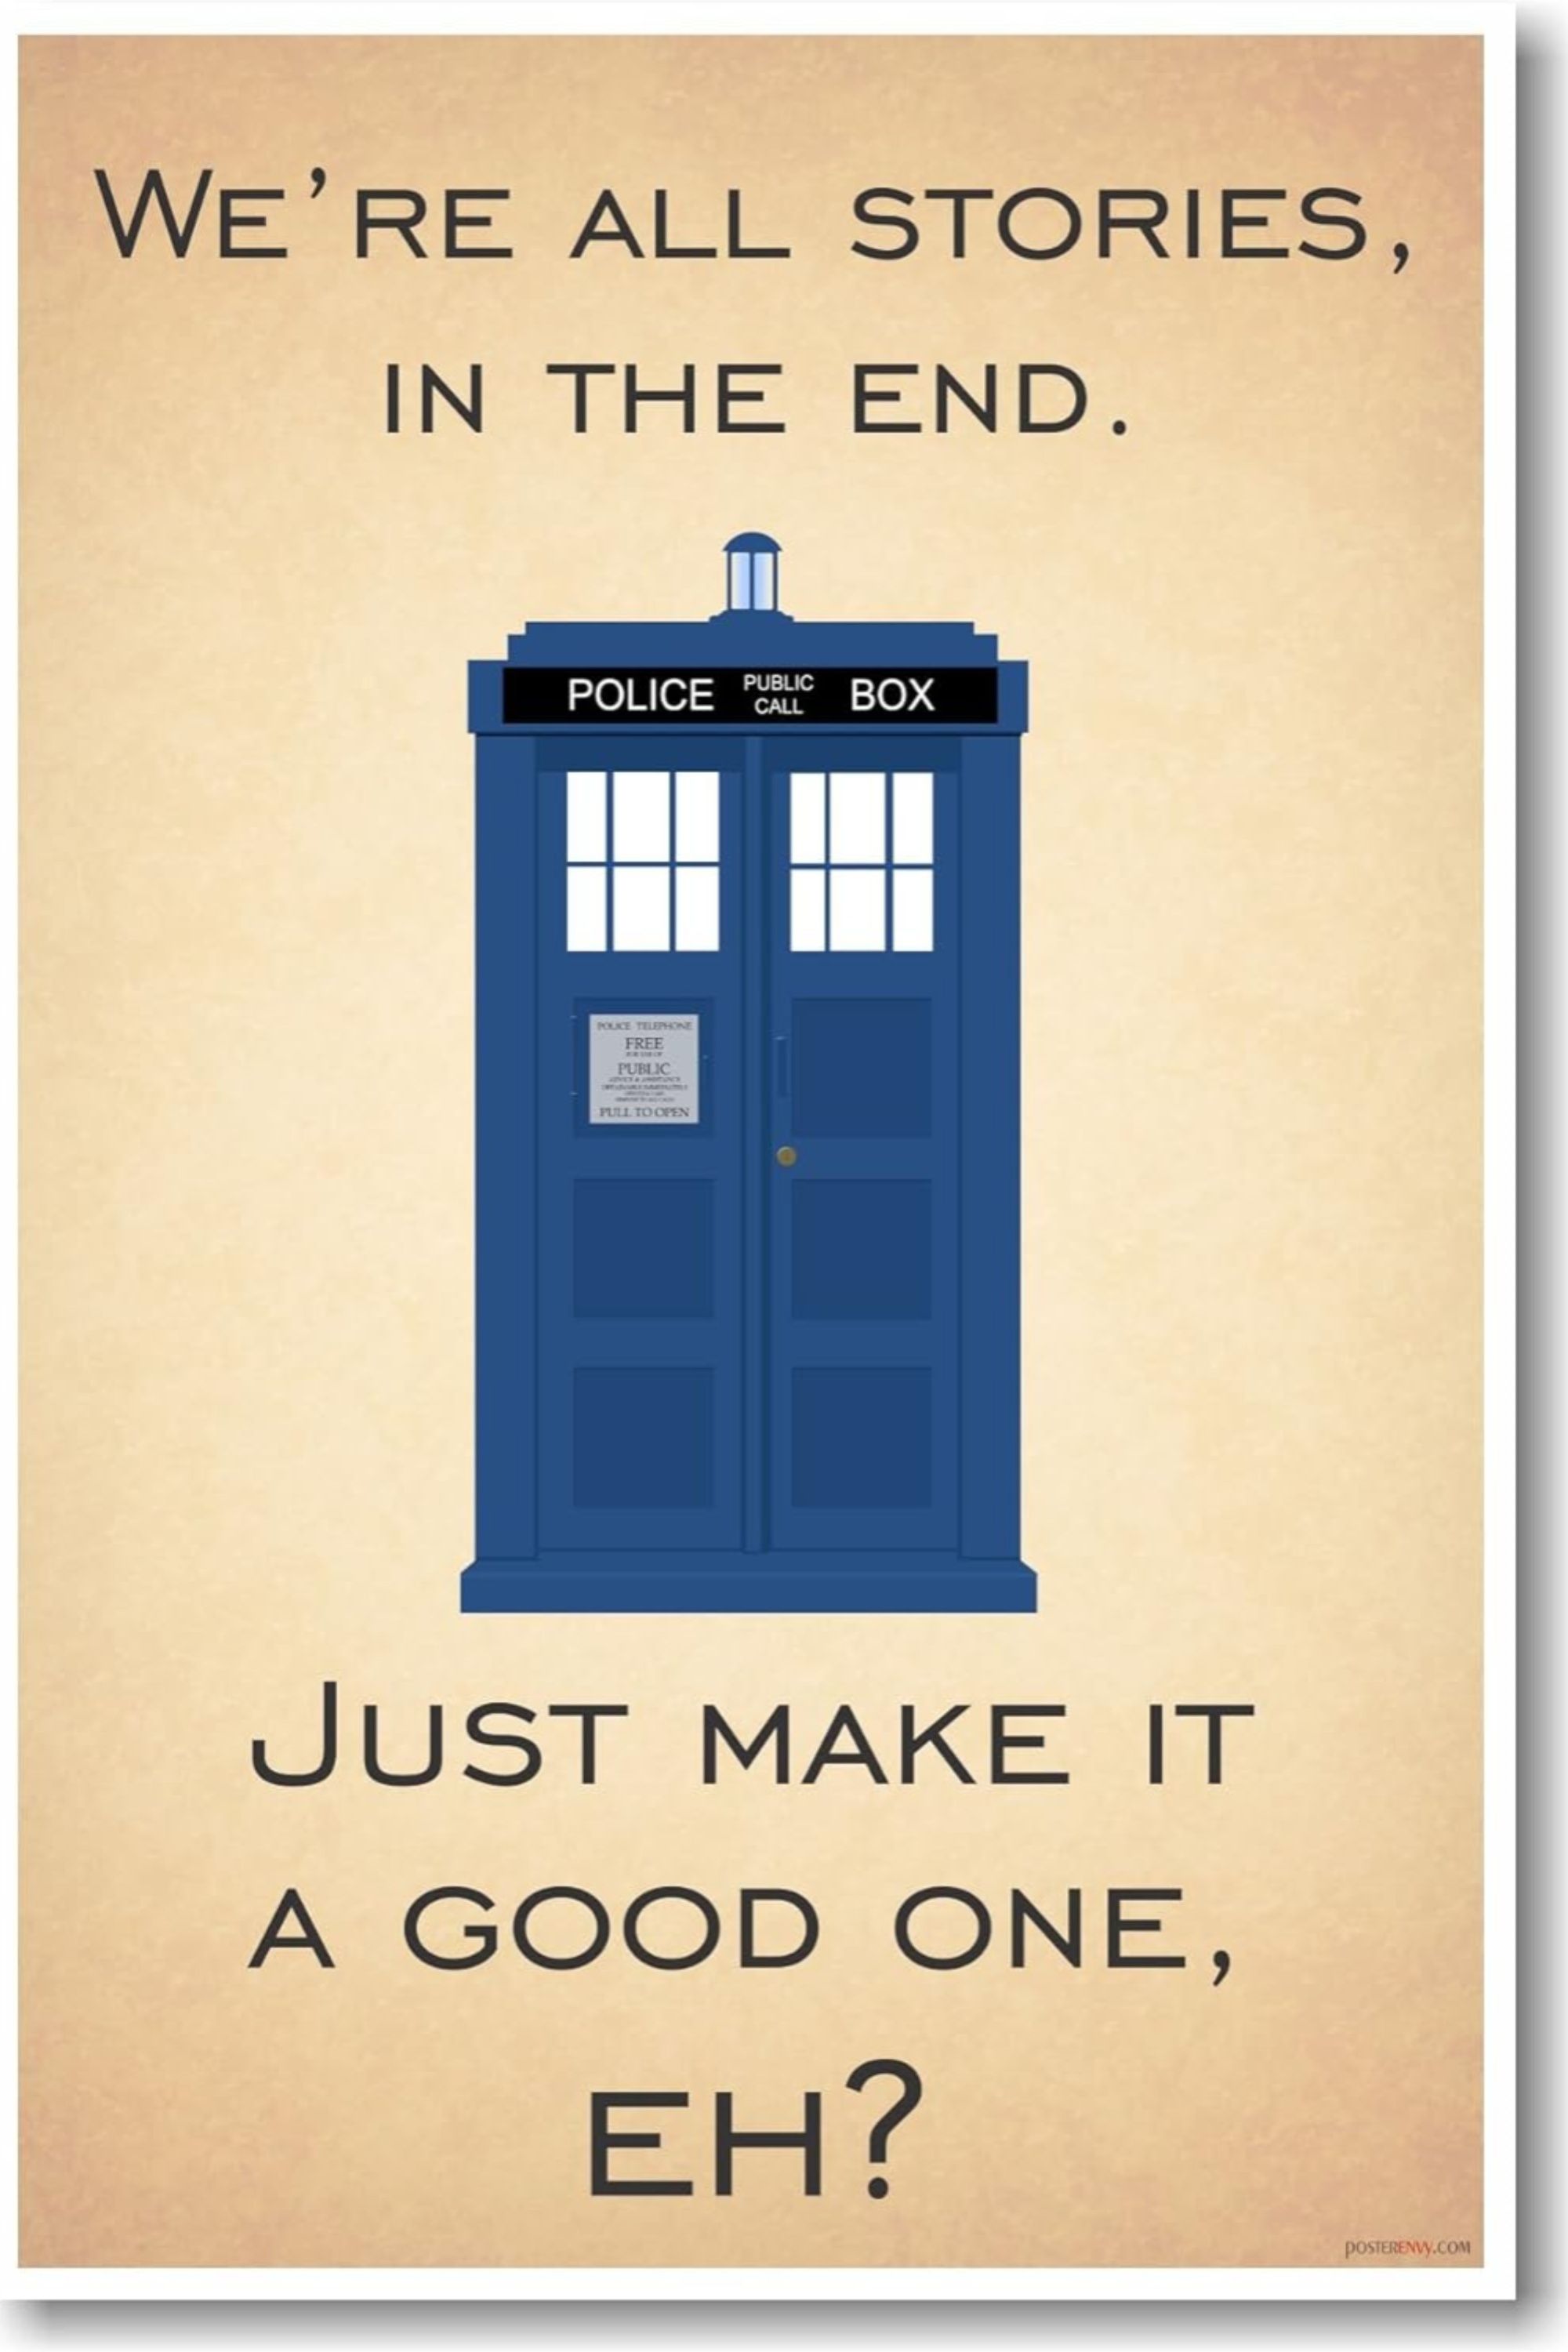 پوستر «دکتر که ما همه داستان هستیم در پایان»